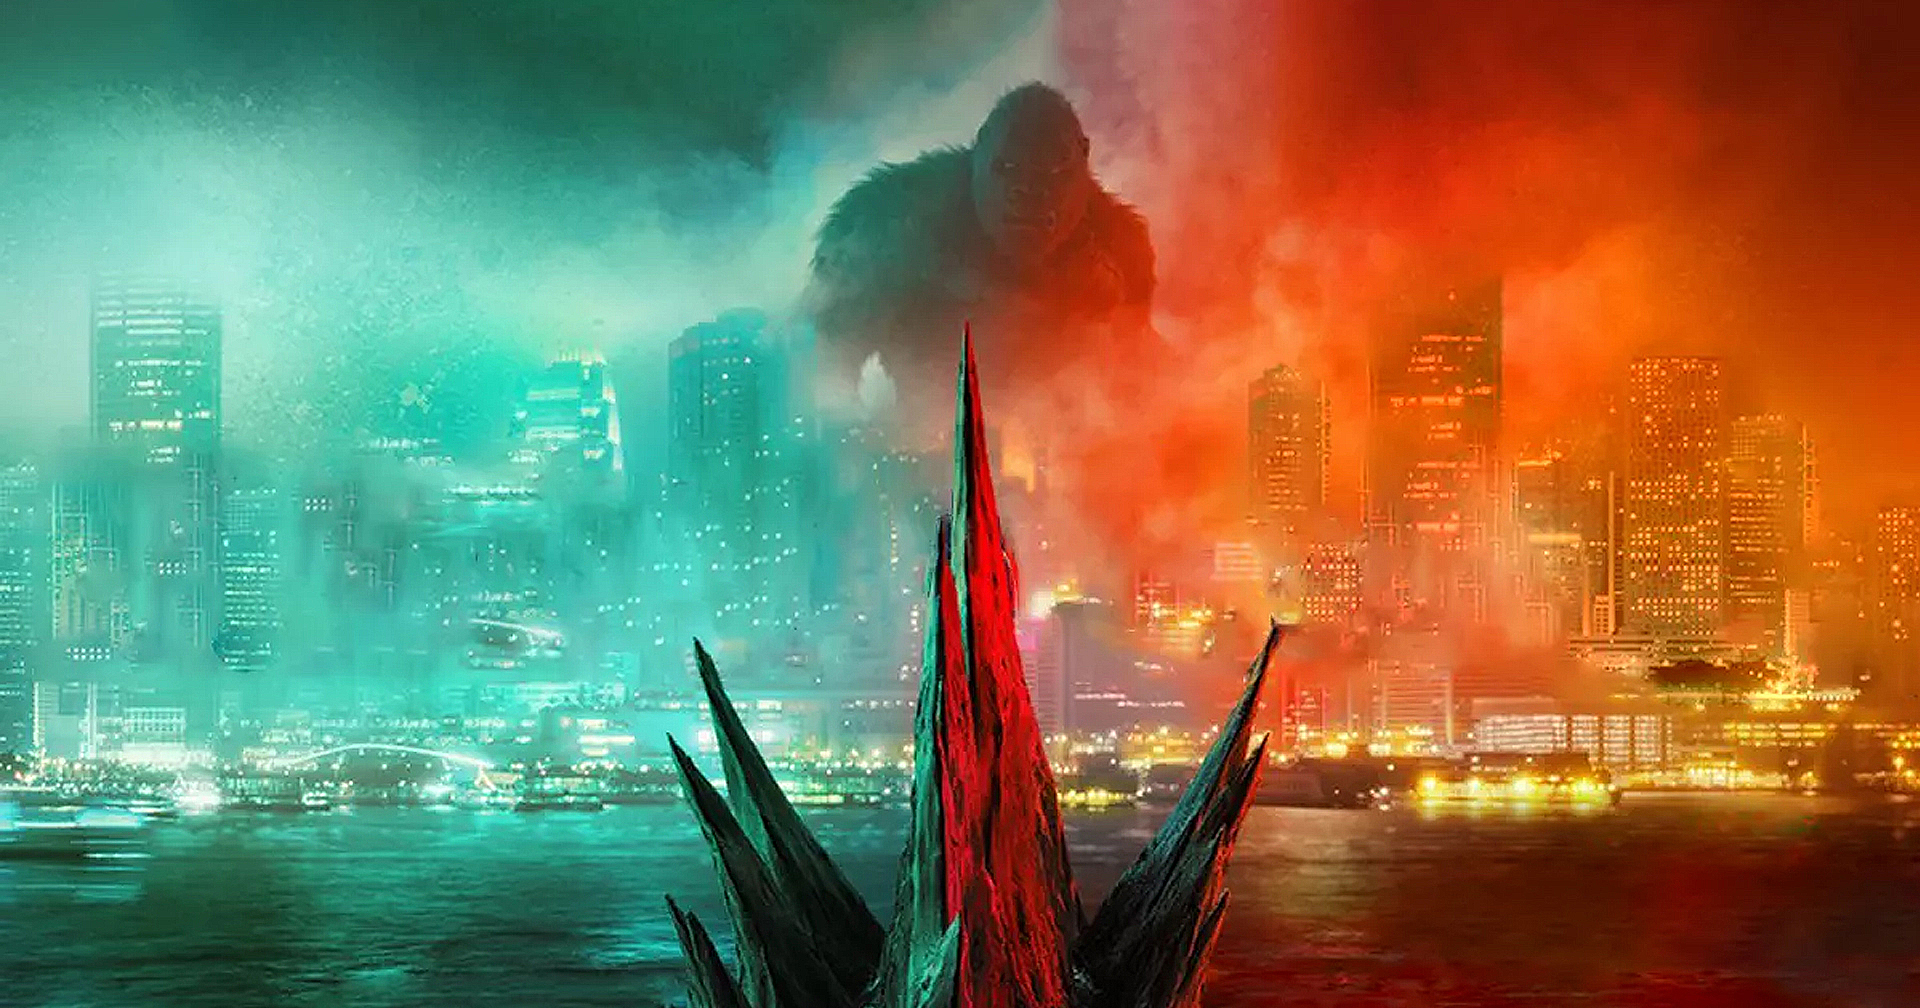 Godzilla vs Kong ทำรายได้ทั่วโลกสัปดาห์ที่ 2 ทะลุหลัก 200 ล้านเหรียญ แล้ว